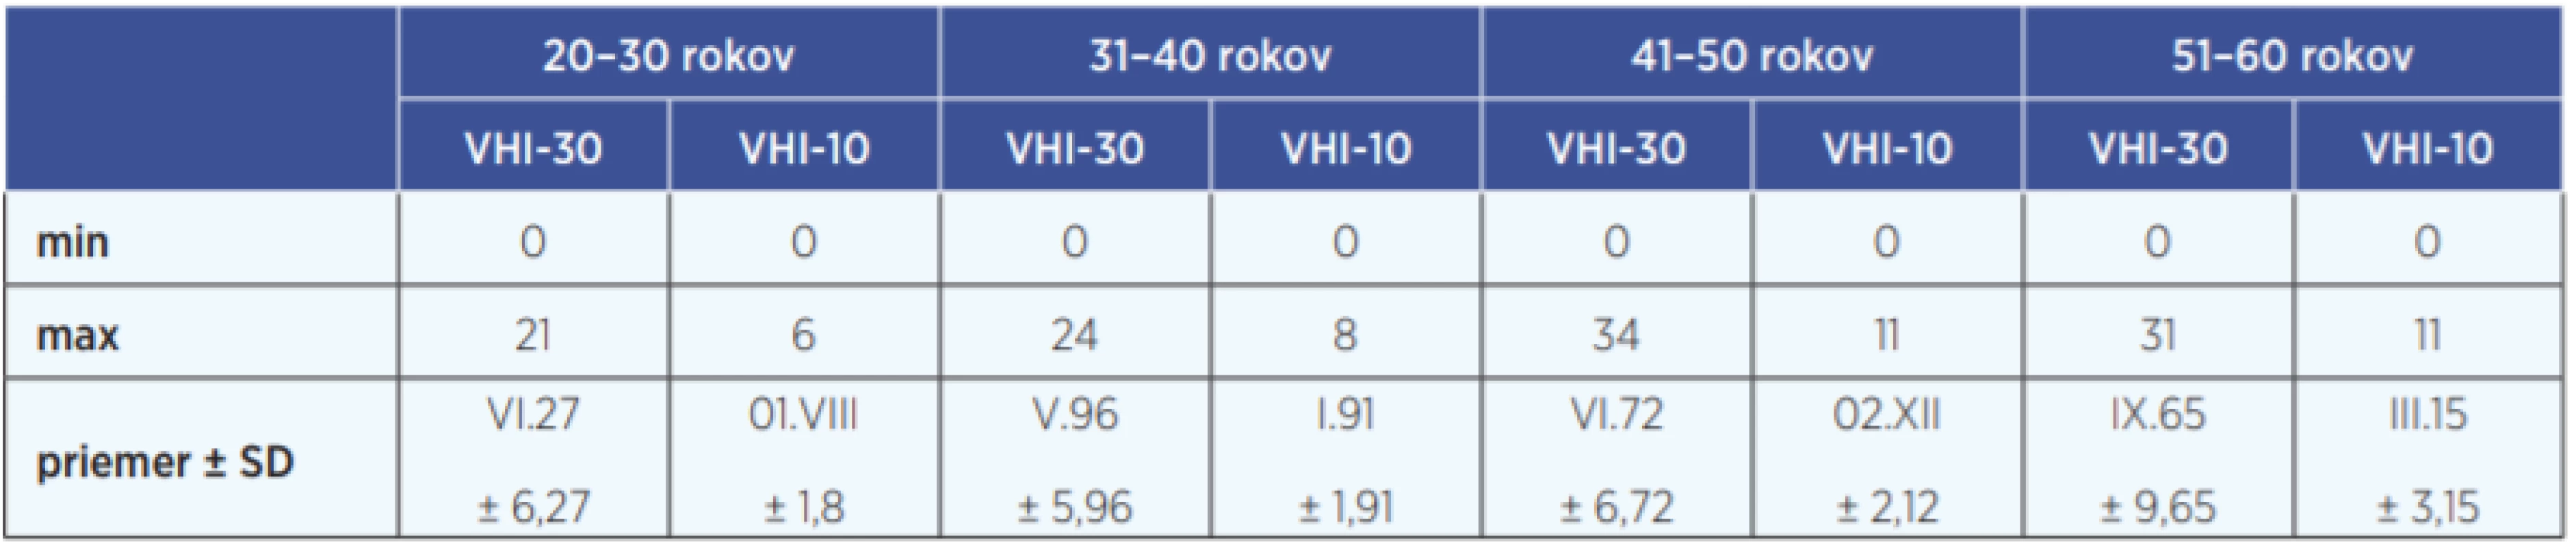 Výsledky skóre vo VHI-30 a VHI-10 podľa vekových kategórií kontrolnej skupiny